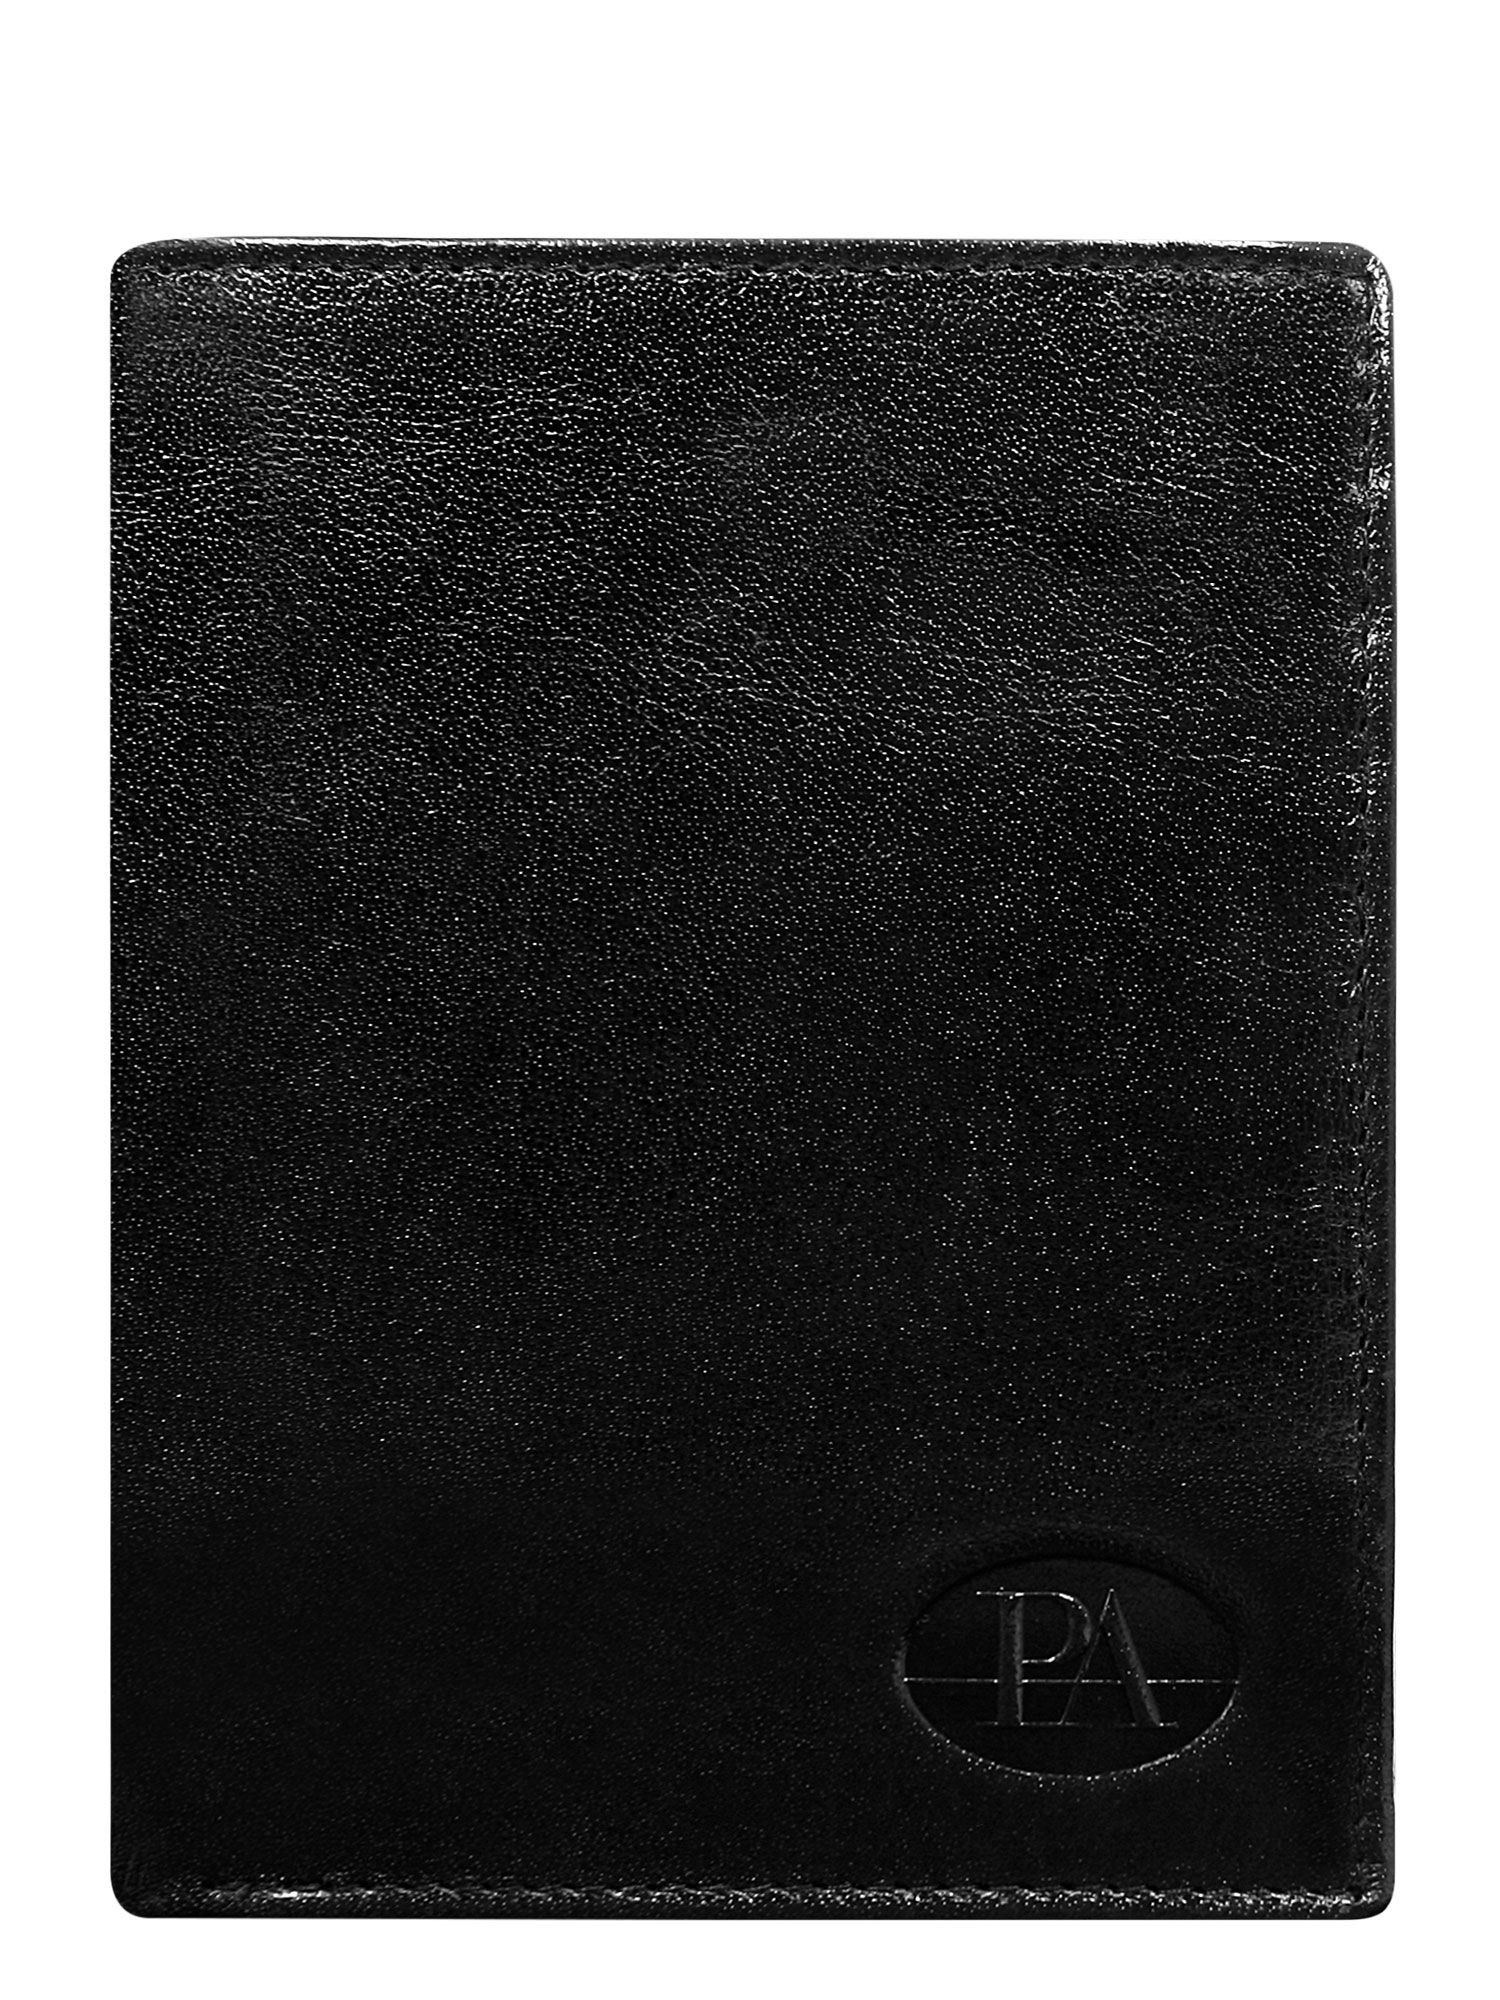 Peněženka CE PR PW 007 model 14833816 černá jedna velikost - FPrice